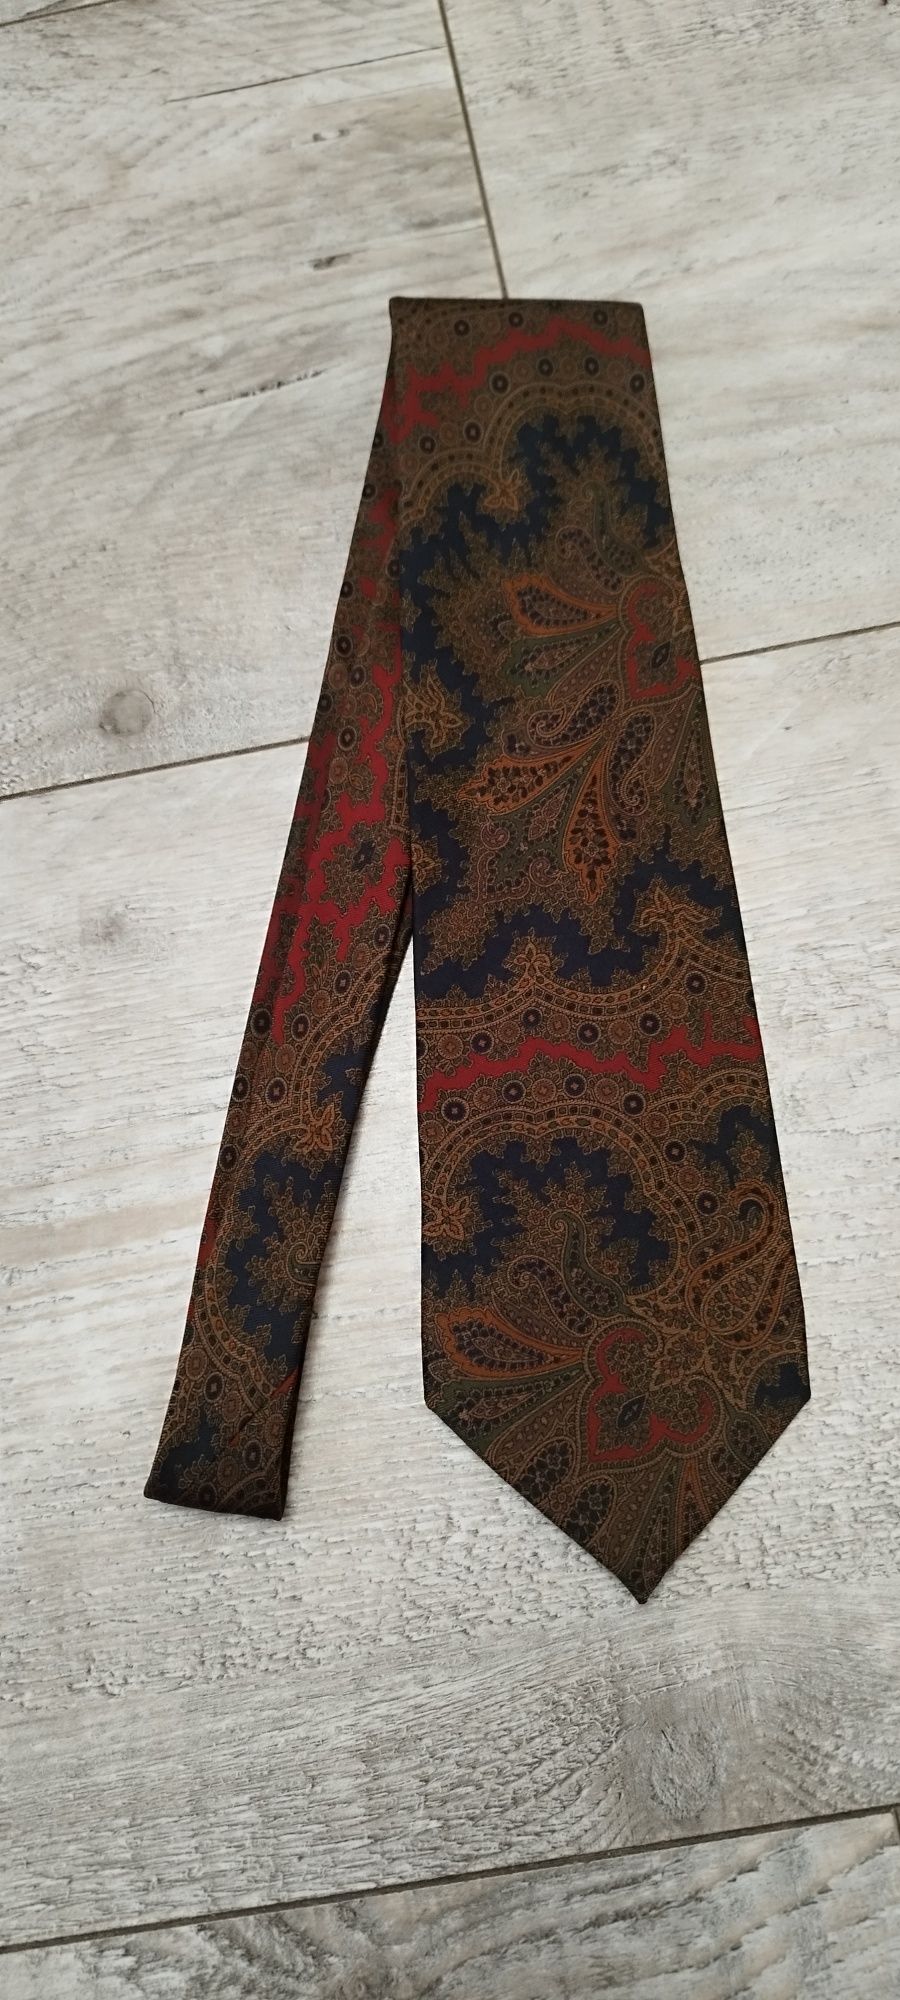 Kolorowy krawat we wzory